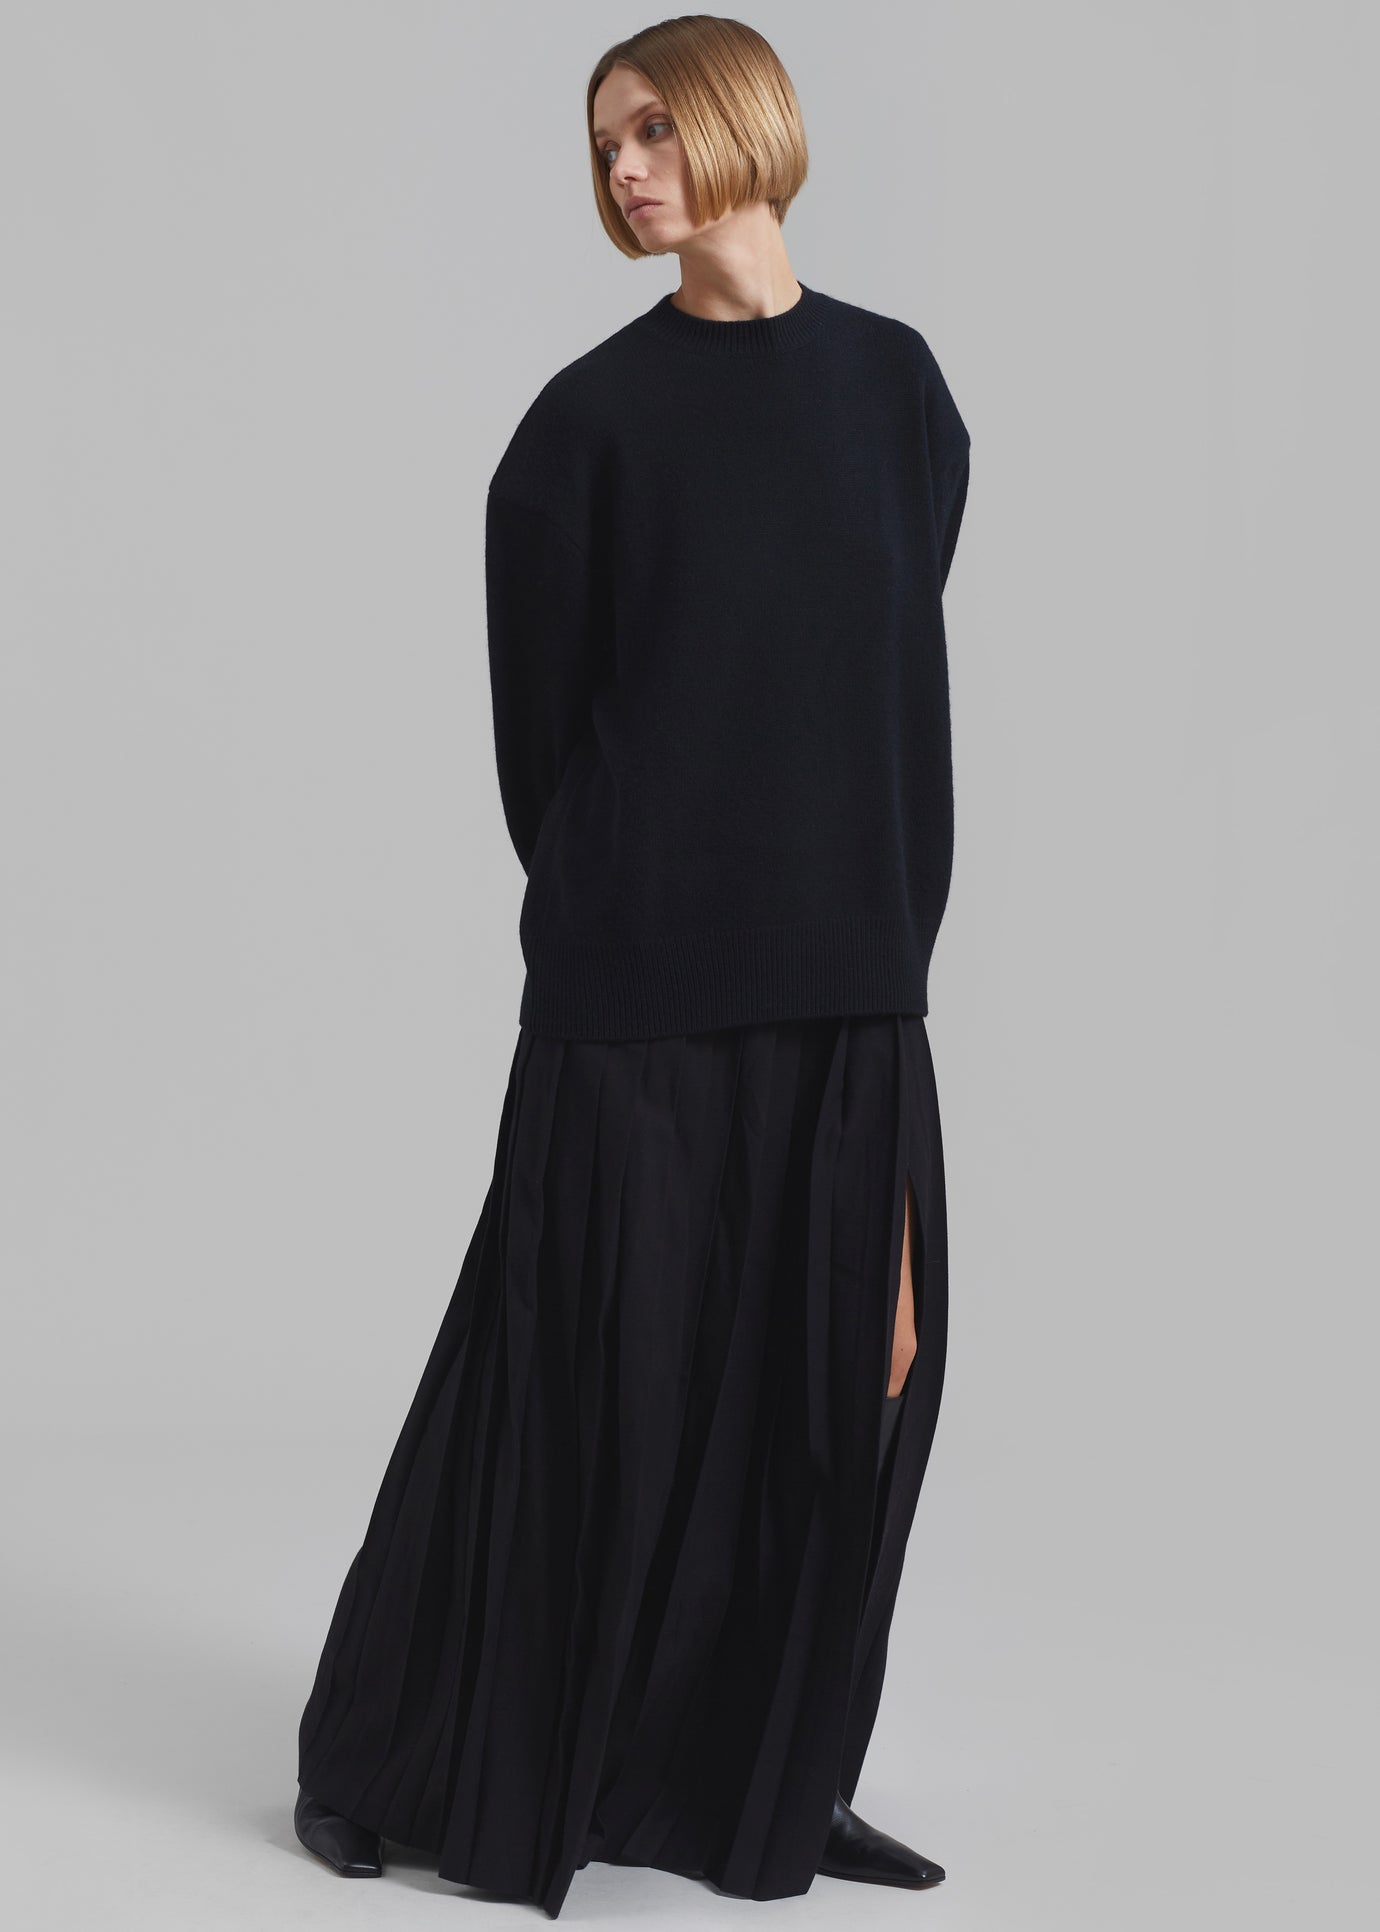 Rafaela Padded Knit Sweater - Black